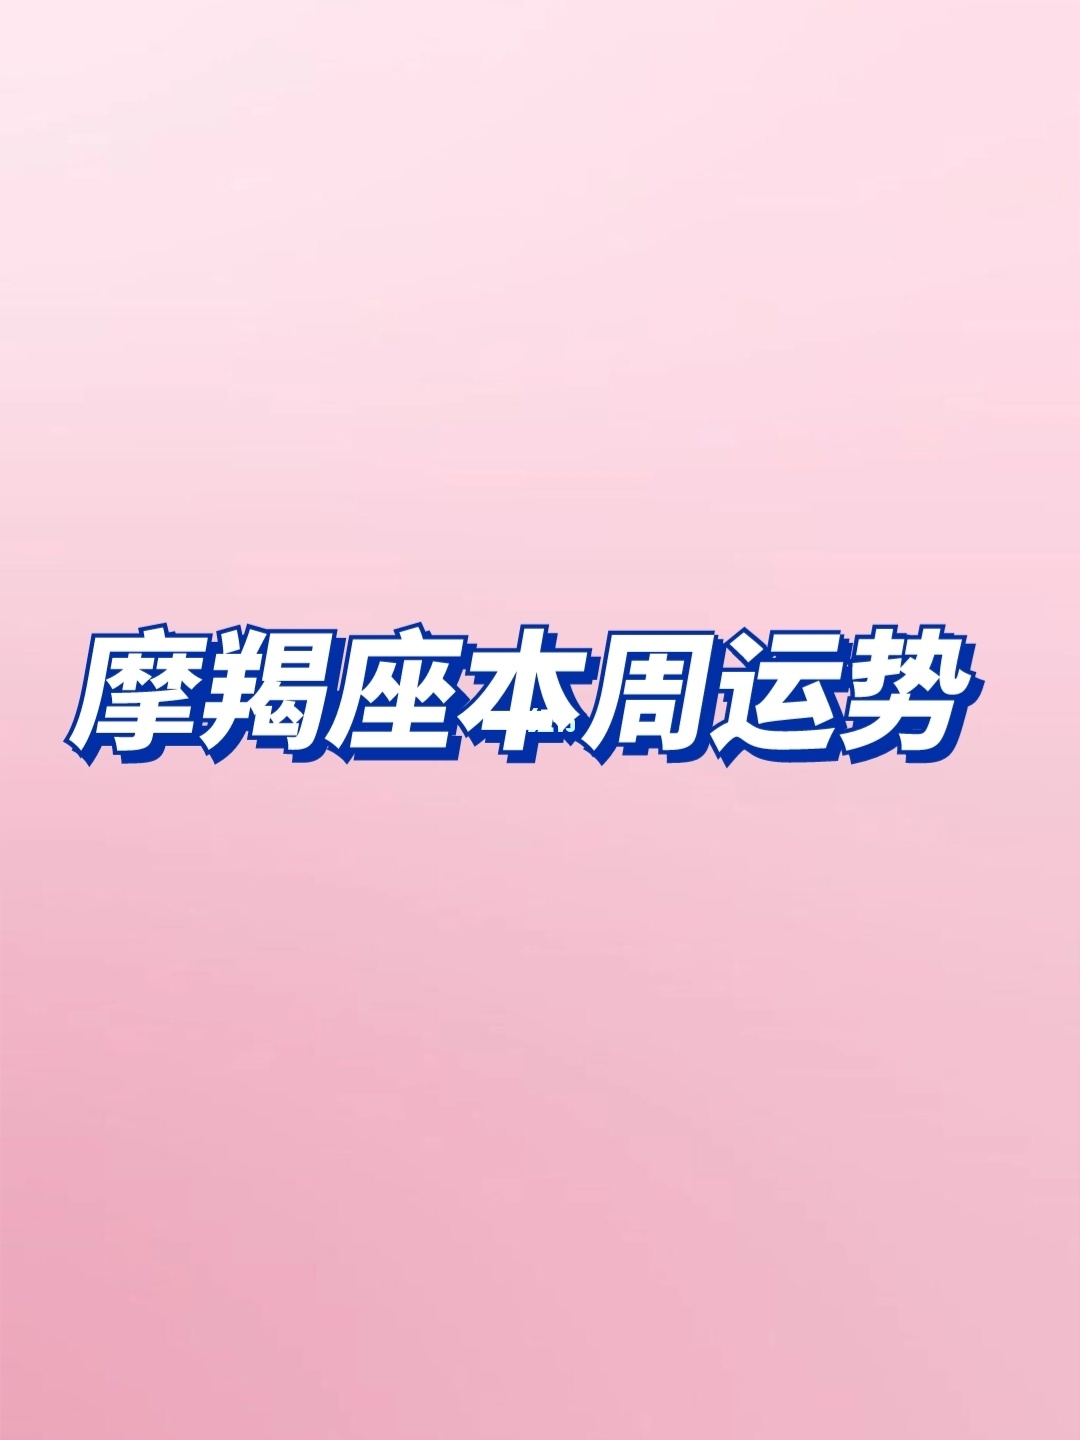 sitexingzuo360.cn 腾讯星座运势每日运势_每日星座运势_星座屋每日星座运势